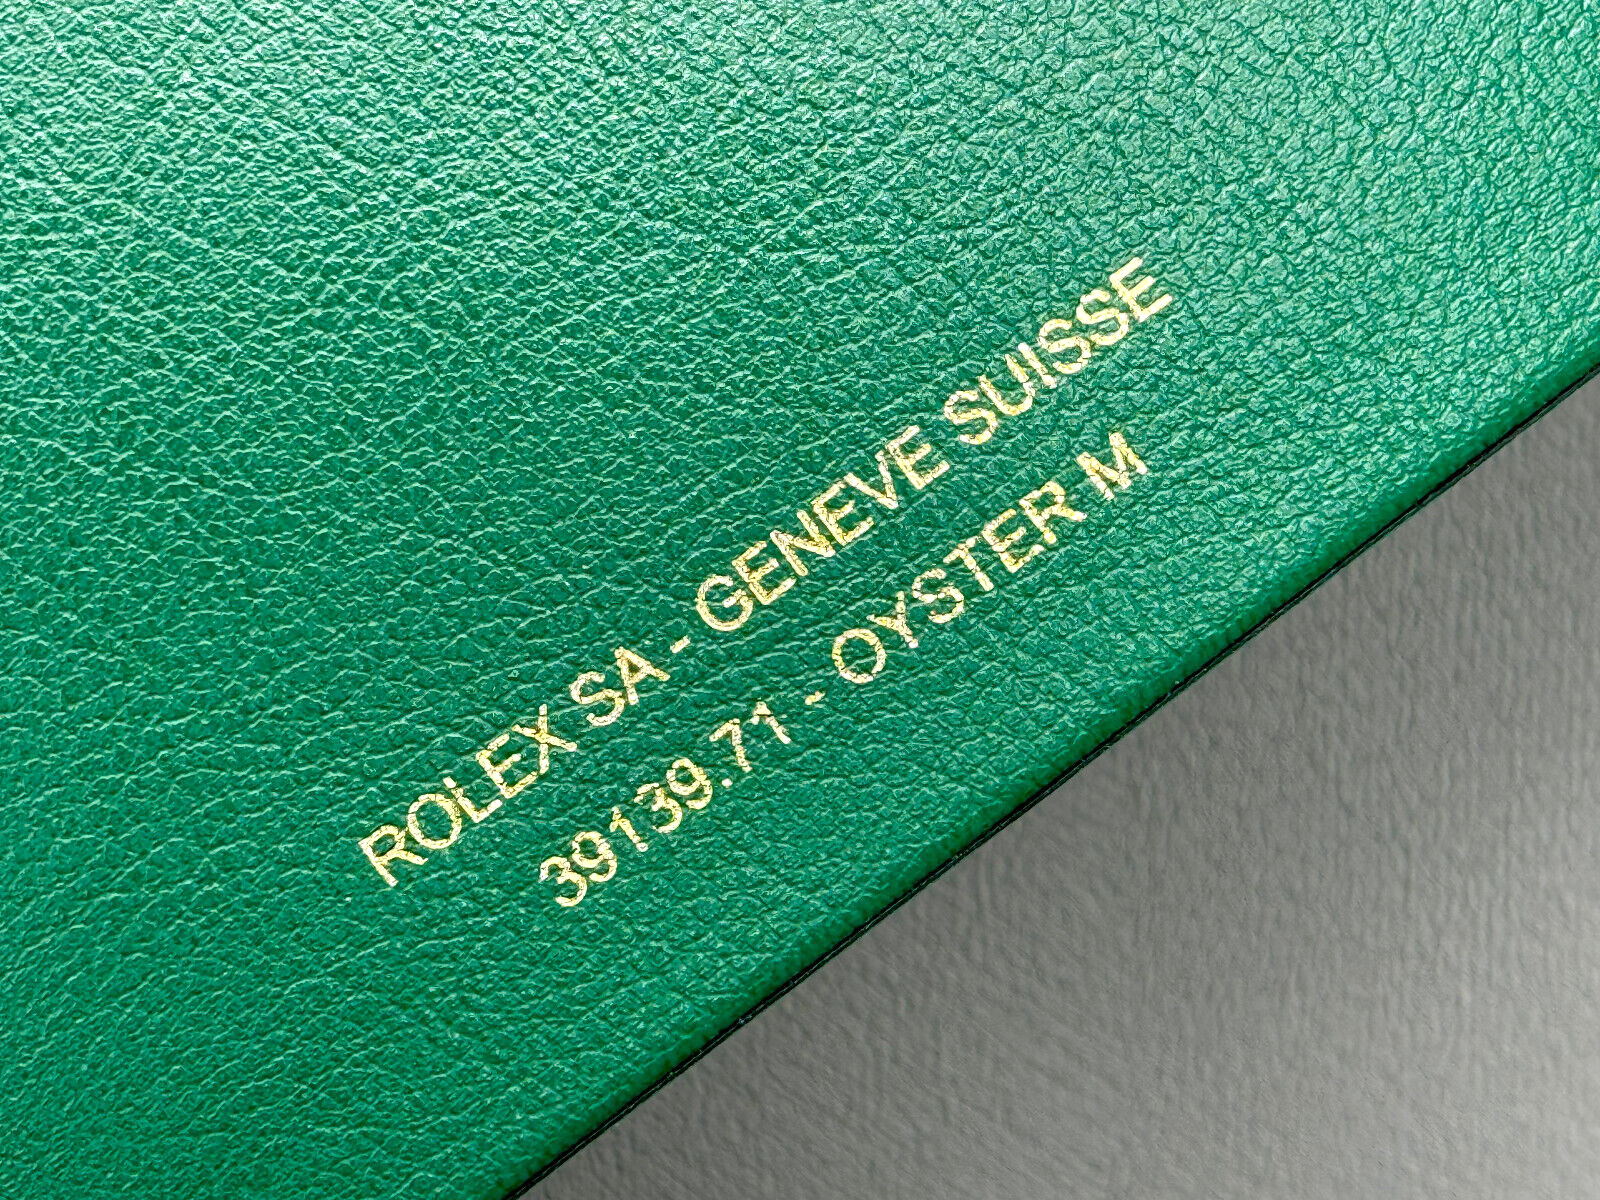 Rolex Oyster Box Größe M 39139.71